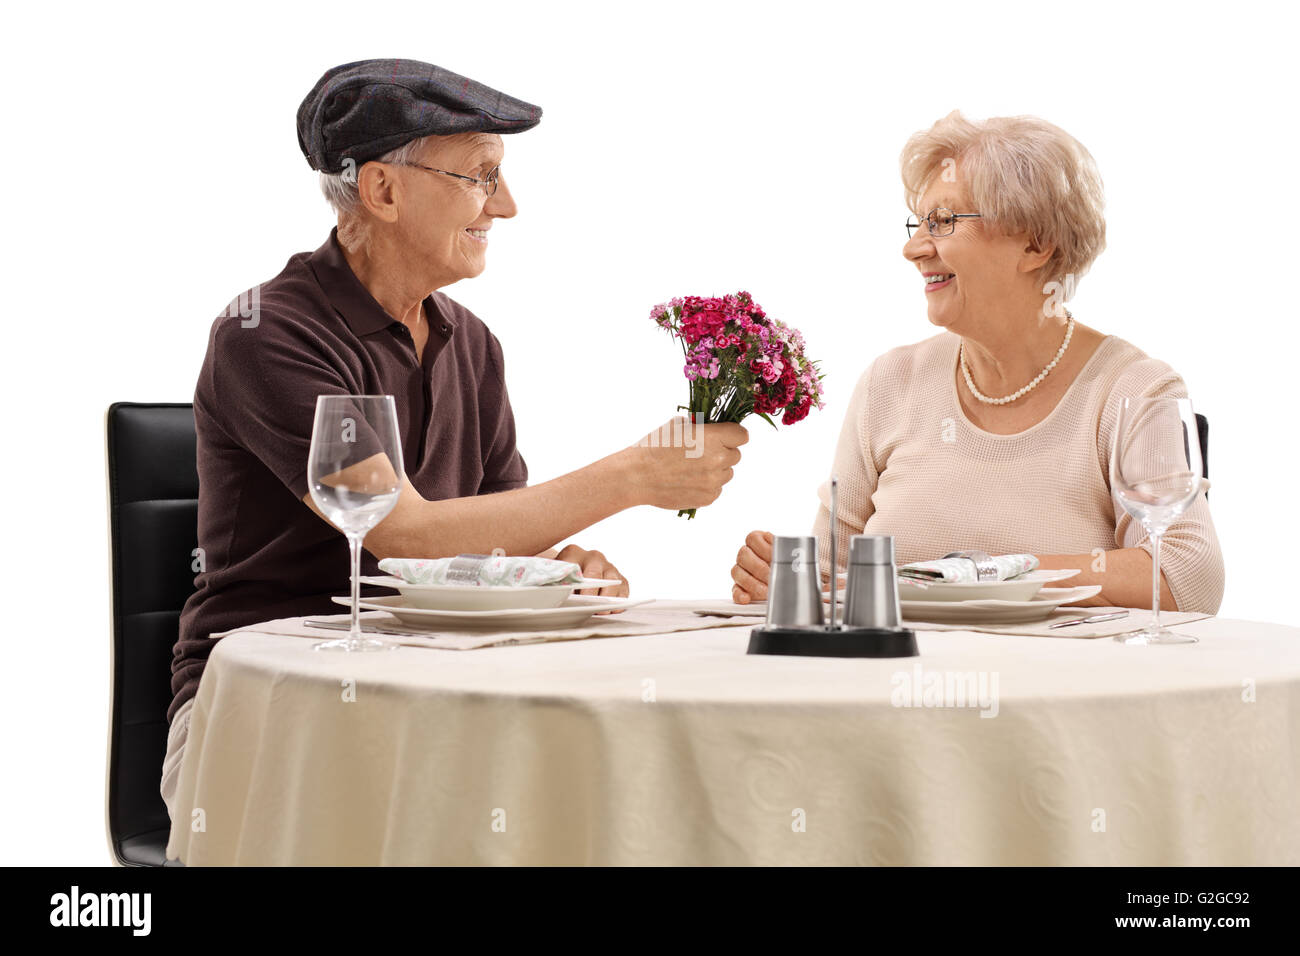 Romantische senior sitzen auf ein Date mit einer Frau und geben ihre Blüten isoliert auf weißem Hintergrund Stockfoto